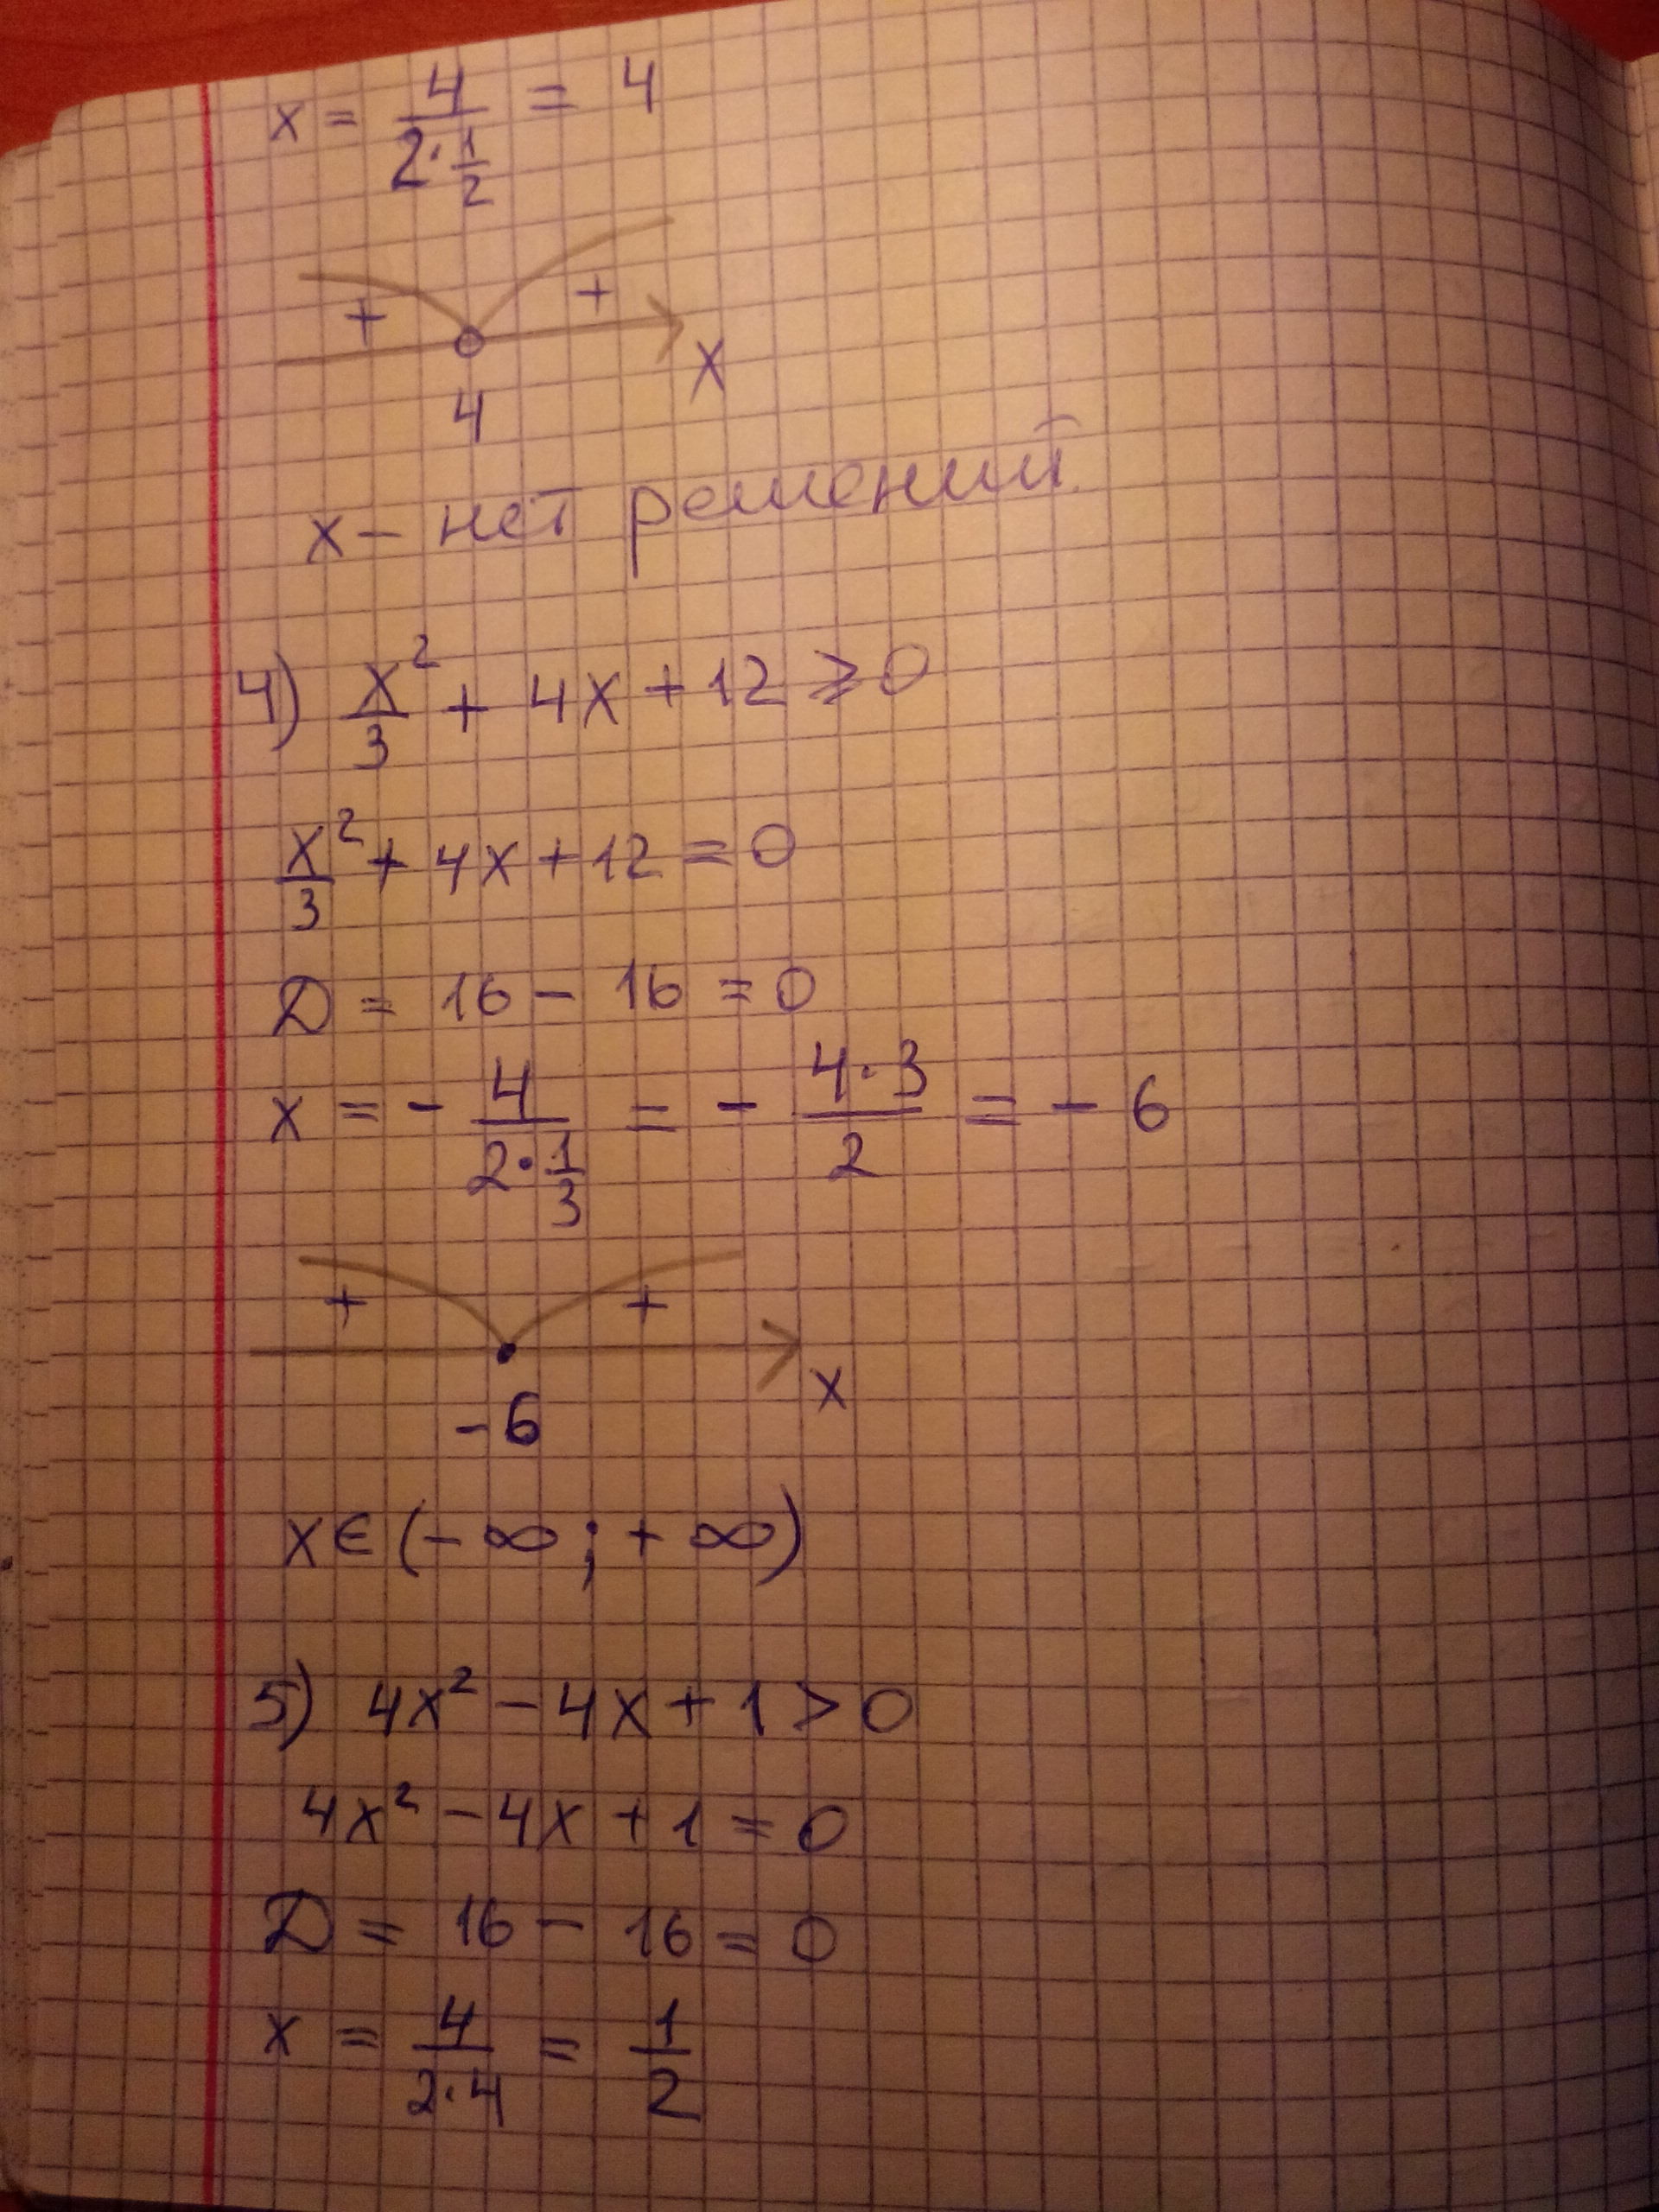 4x 12 x 8 0. 4x4+4x3-9x2-x+2=0. X-2 ____ X+4. -4x4-4x2+24=0. X2-4x+3 0.